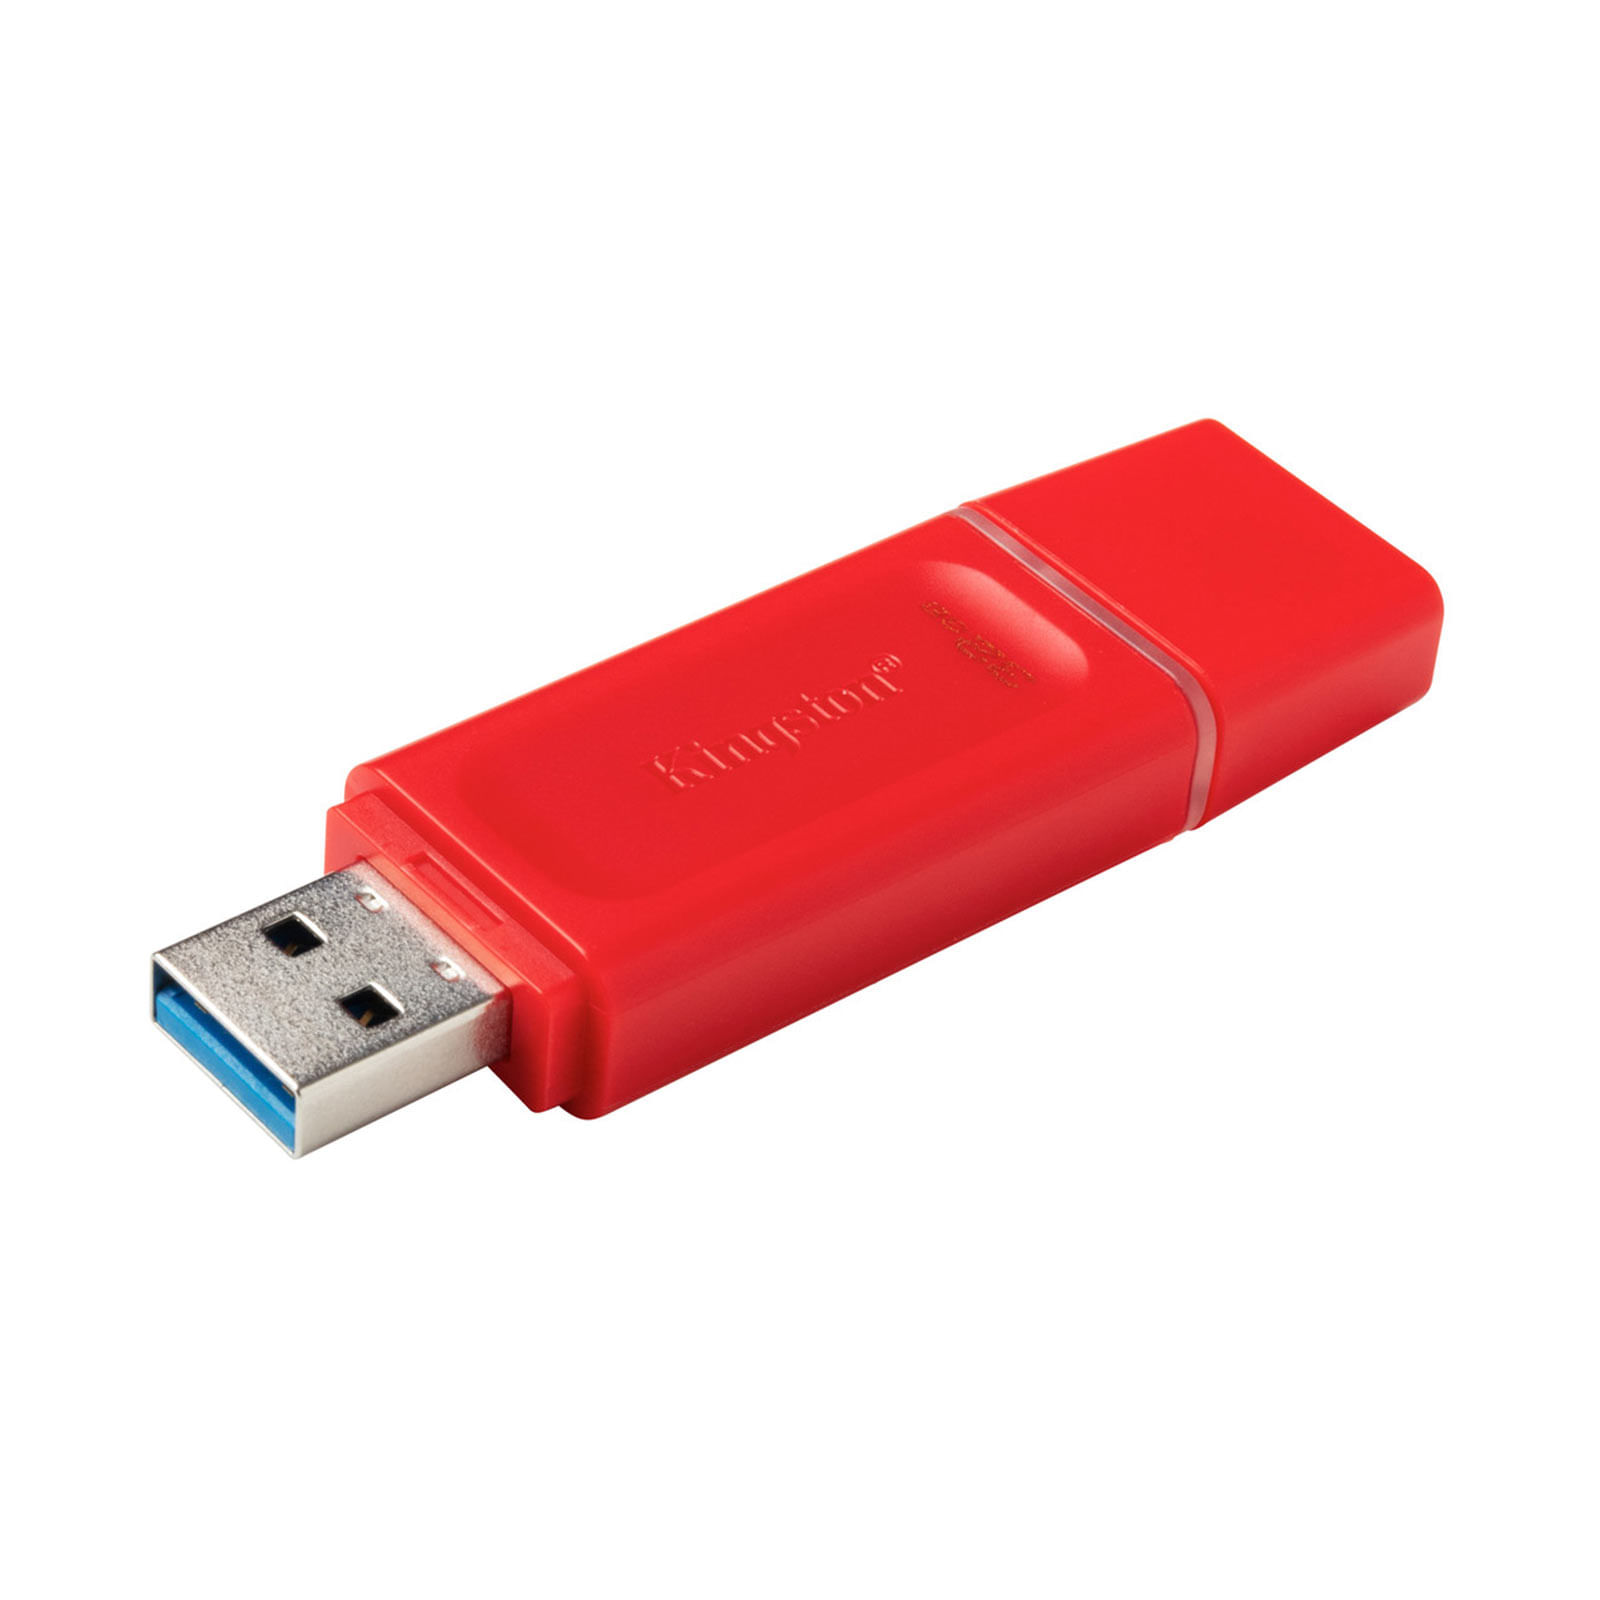 secuestrar Conmoción encerrar Memoria USB Kingston de 32 GB, roja